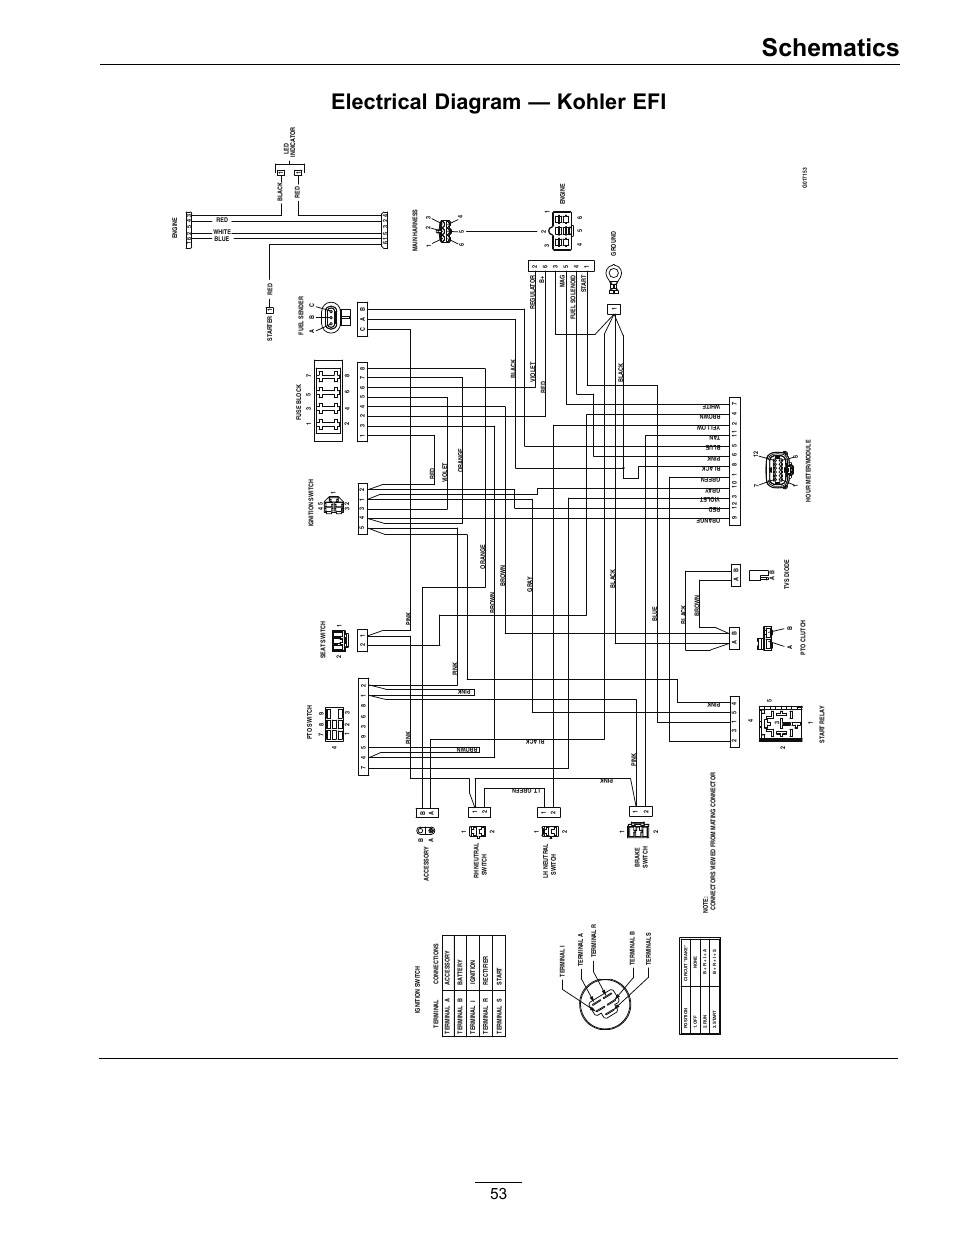 Wire Schematic Lazer Z Lz20kc524 Wiring Diagram Exmark Lazer Z